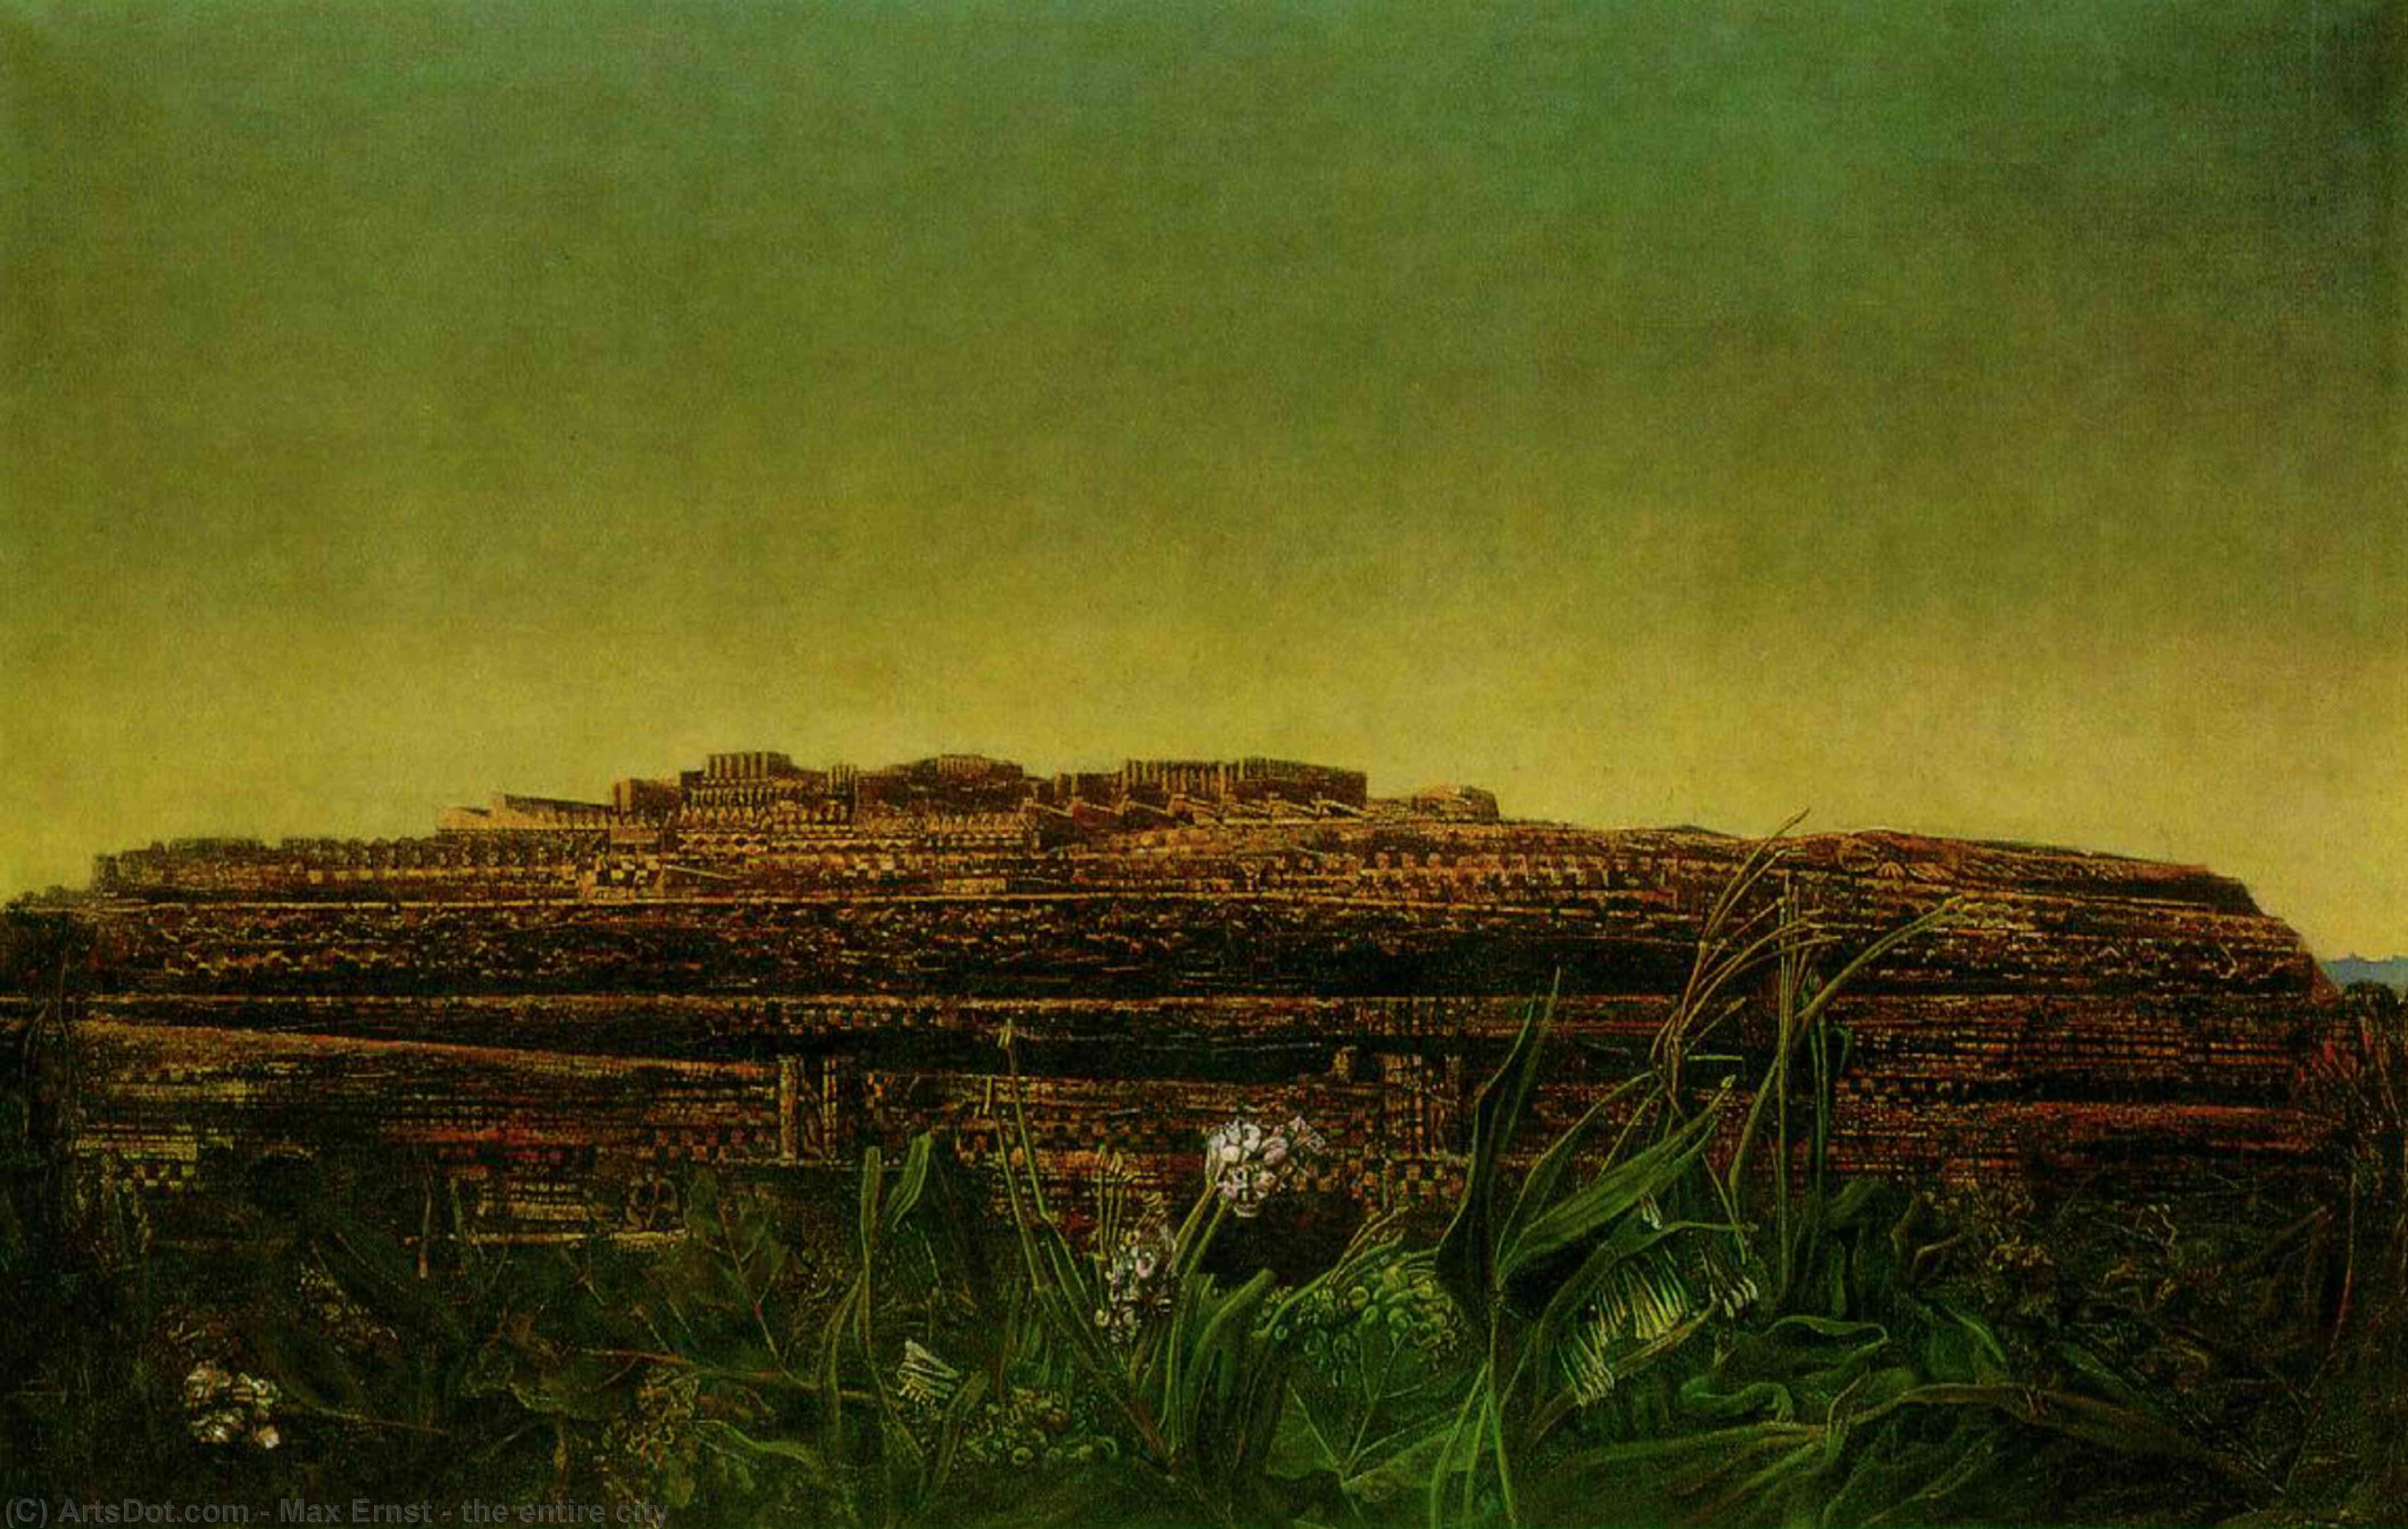 WikiOO.org - Εγκυκλοπαίδεια Καλών Τεχνών - Ζωγραφική, έργα τέχνης Max Ernst - the entire city